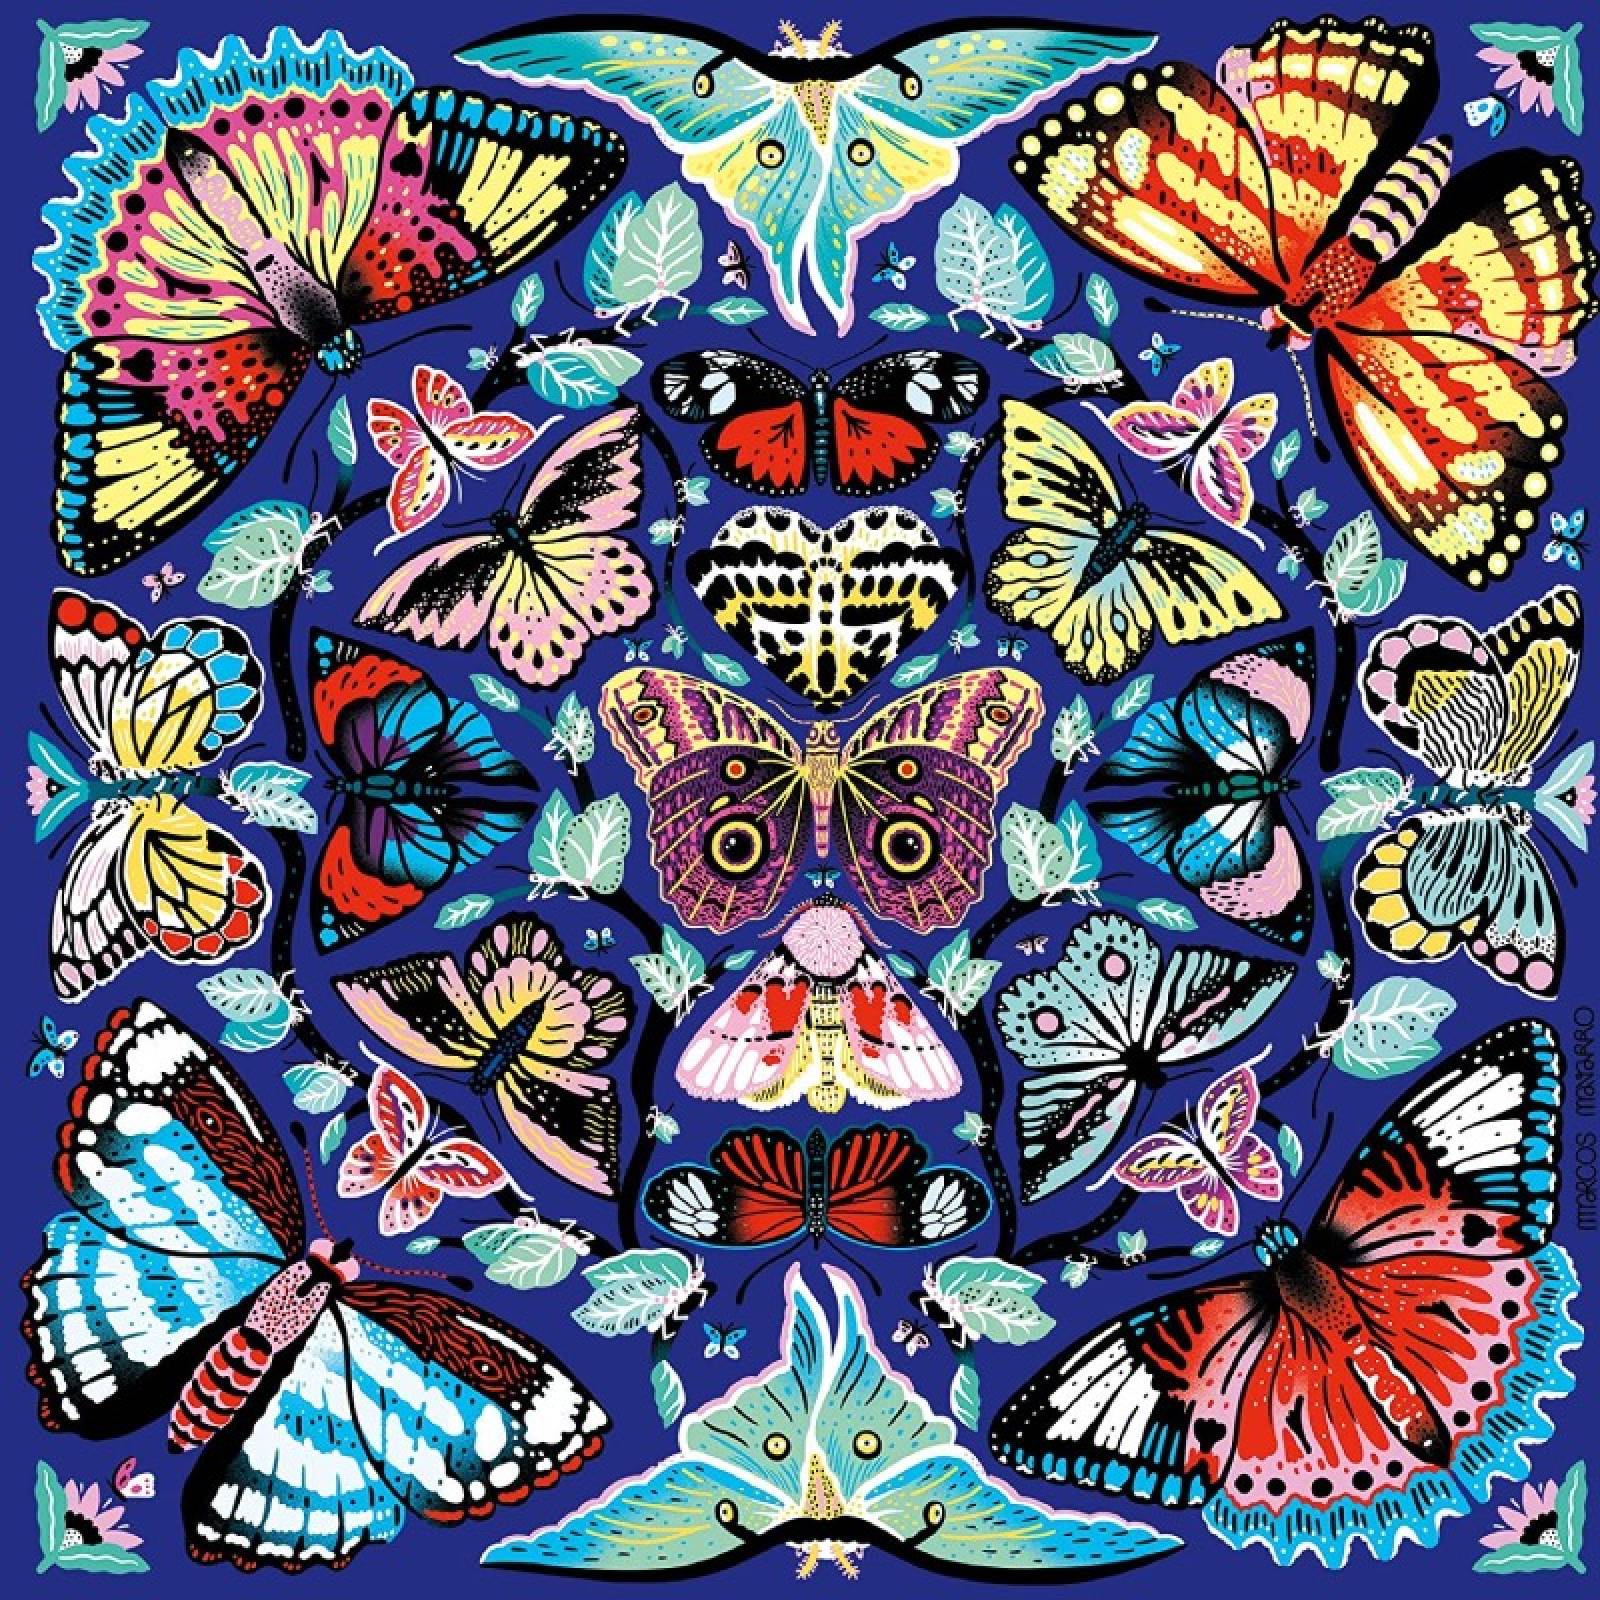 Kaleido Butterflies - 500 Piece Jigsaw Puzzle thumbnails